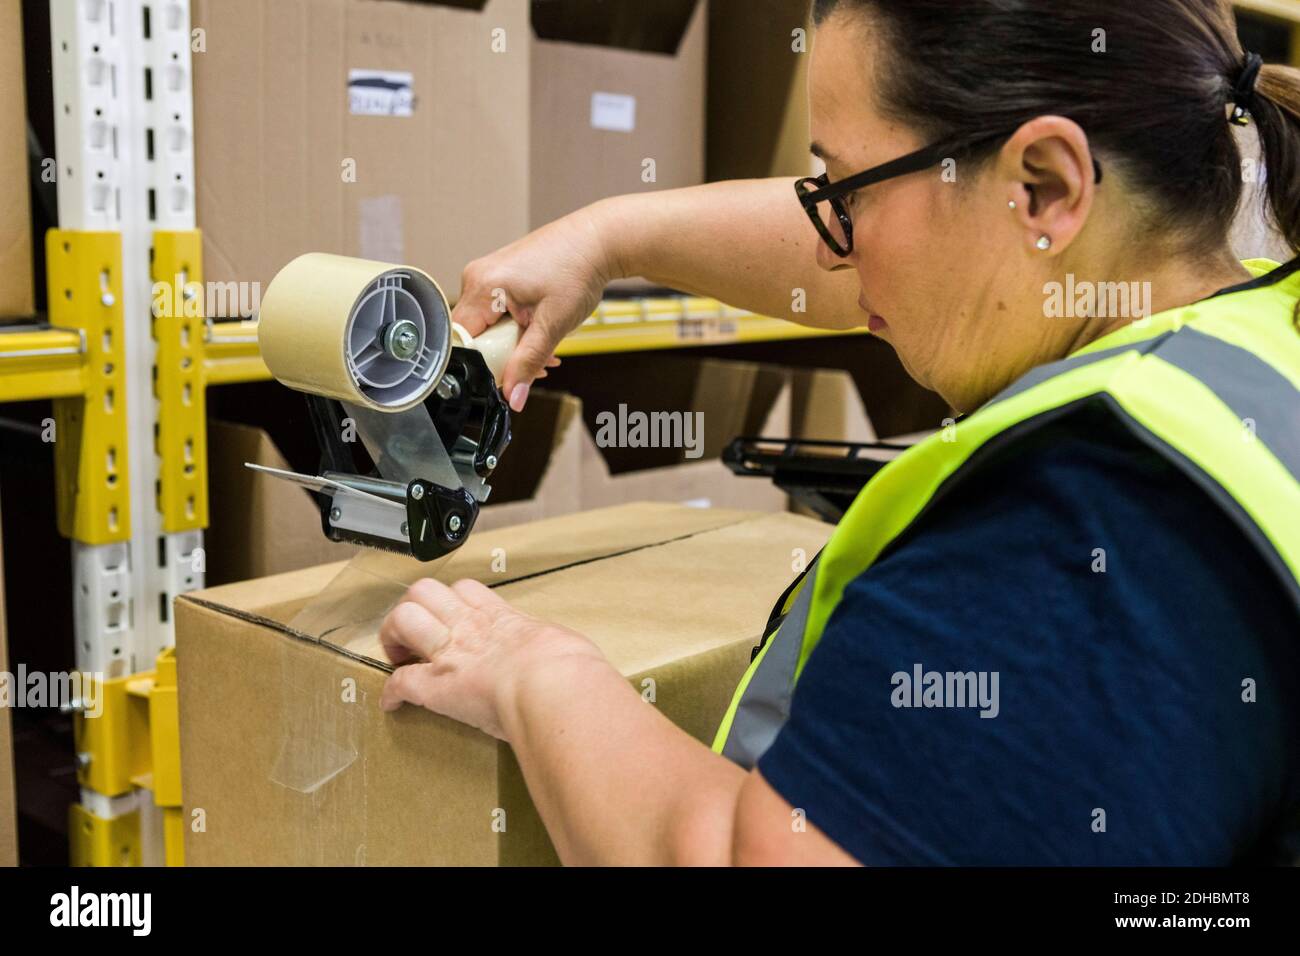 Weibliche Arbeiter Verpackung Karton mit Klebeband bei der Verteilung Lager Stockfoto